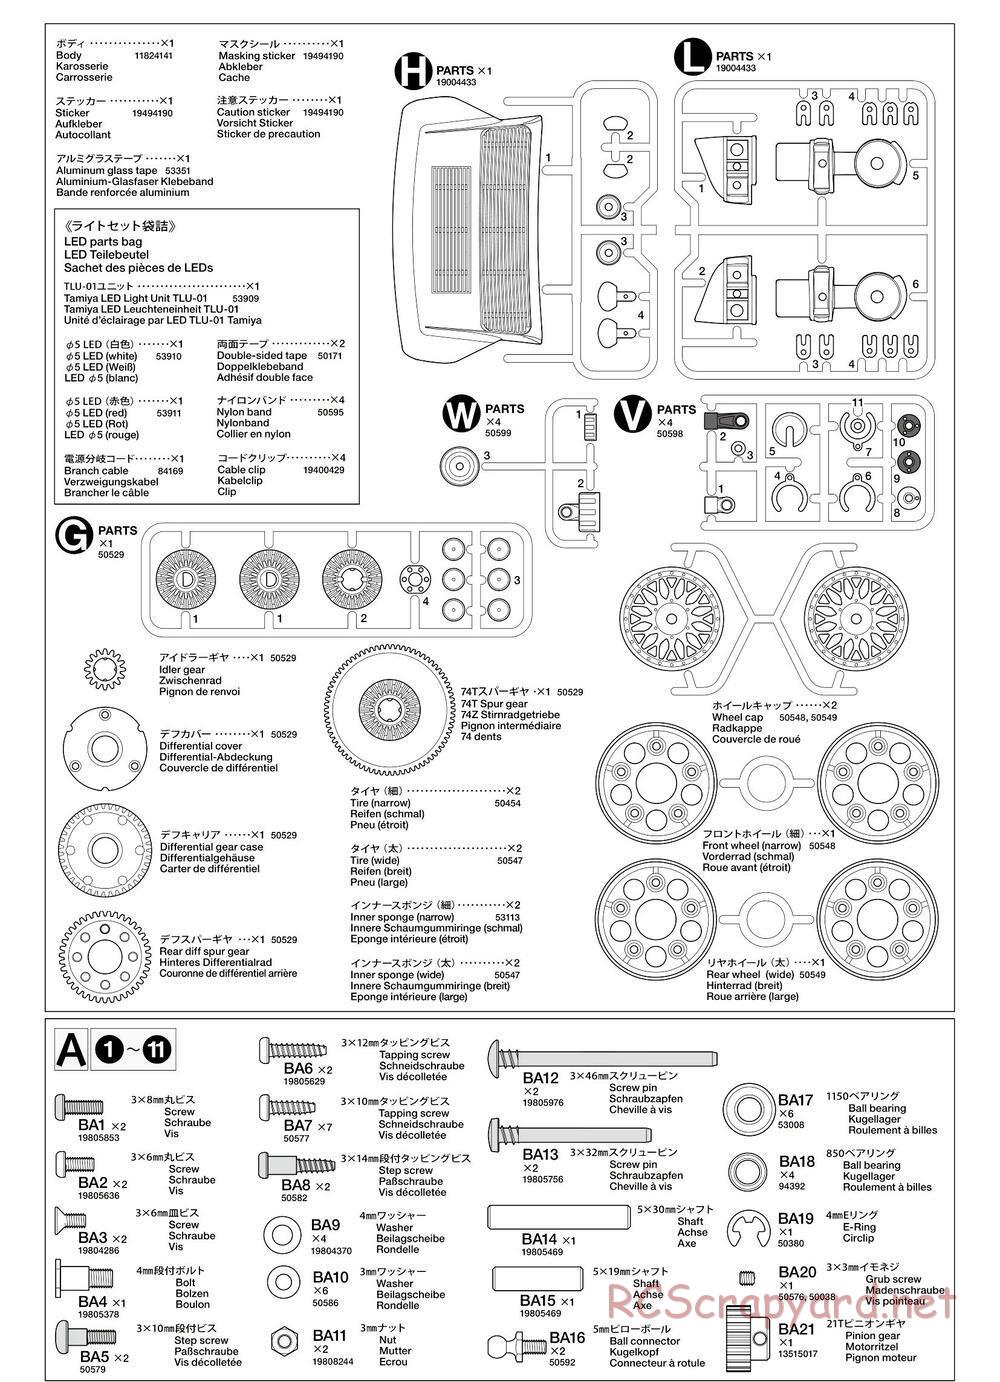 Tamiya - TA02SW Chassis - Manual - Page 25